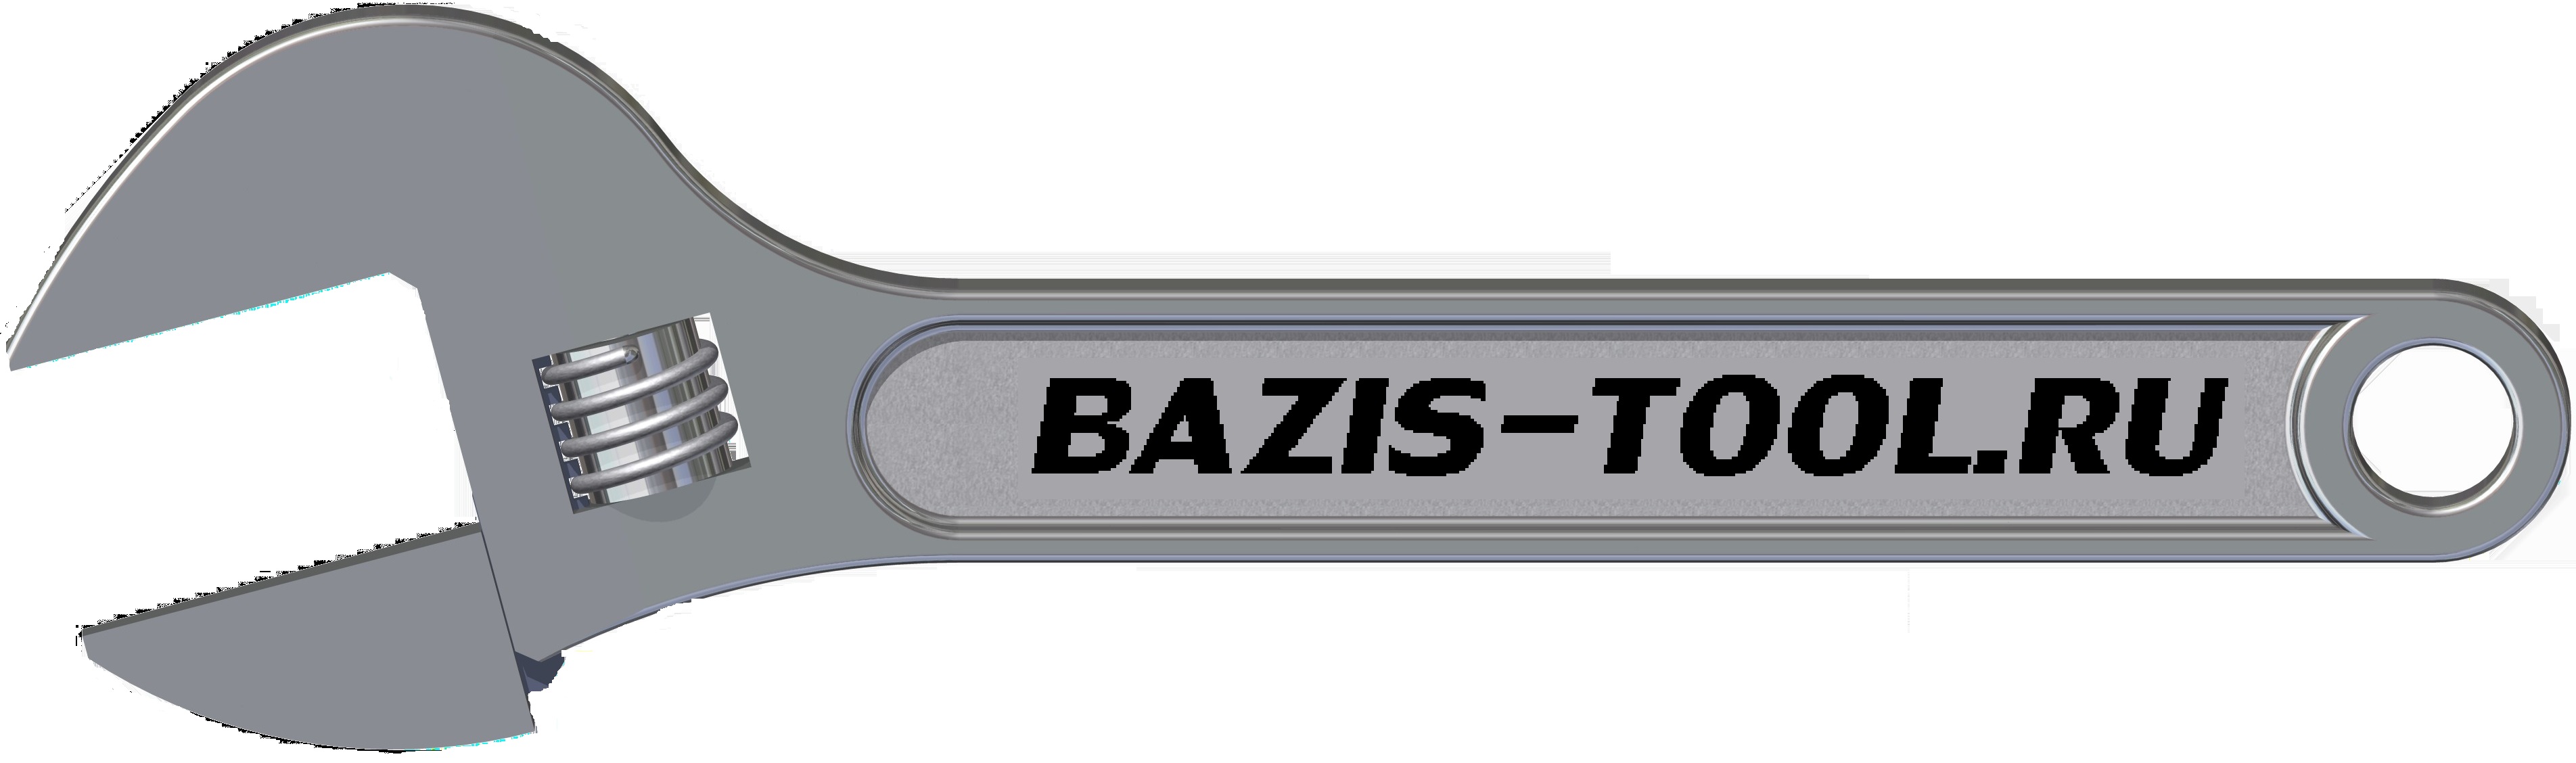 Компания БАЗИС - Интернет-магазин bazis-tool.ru